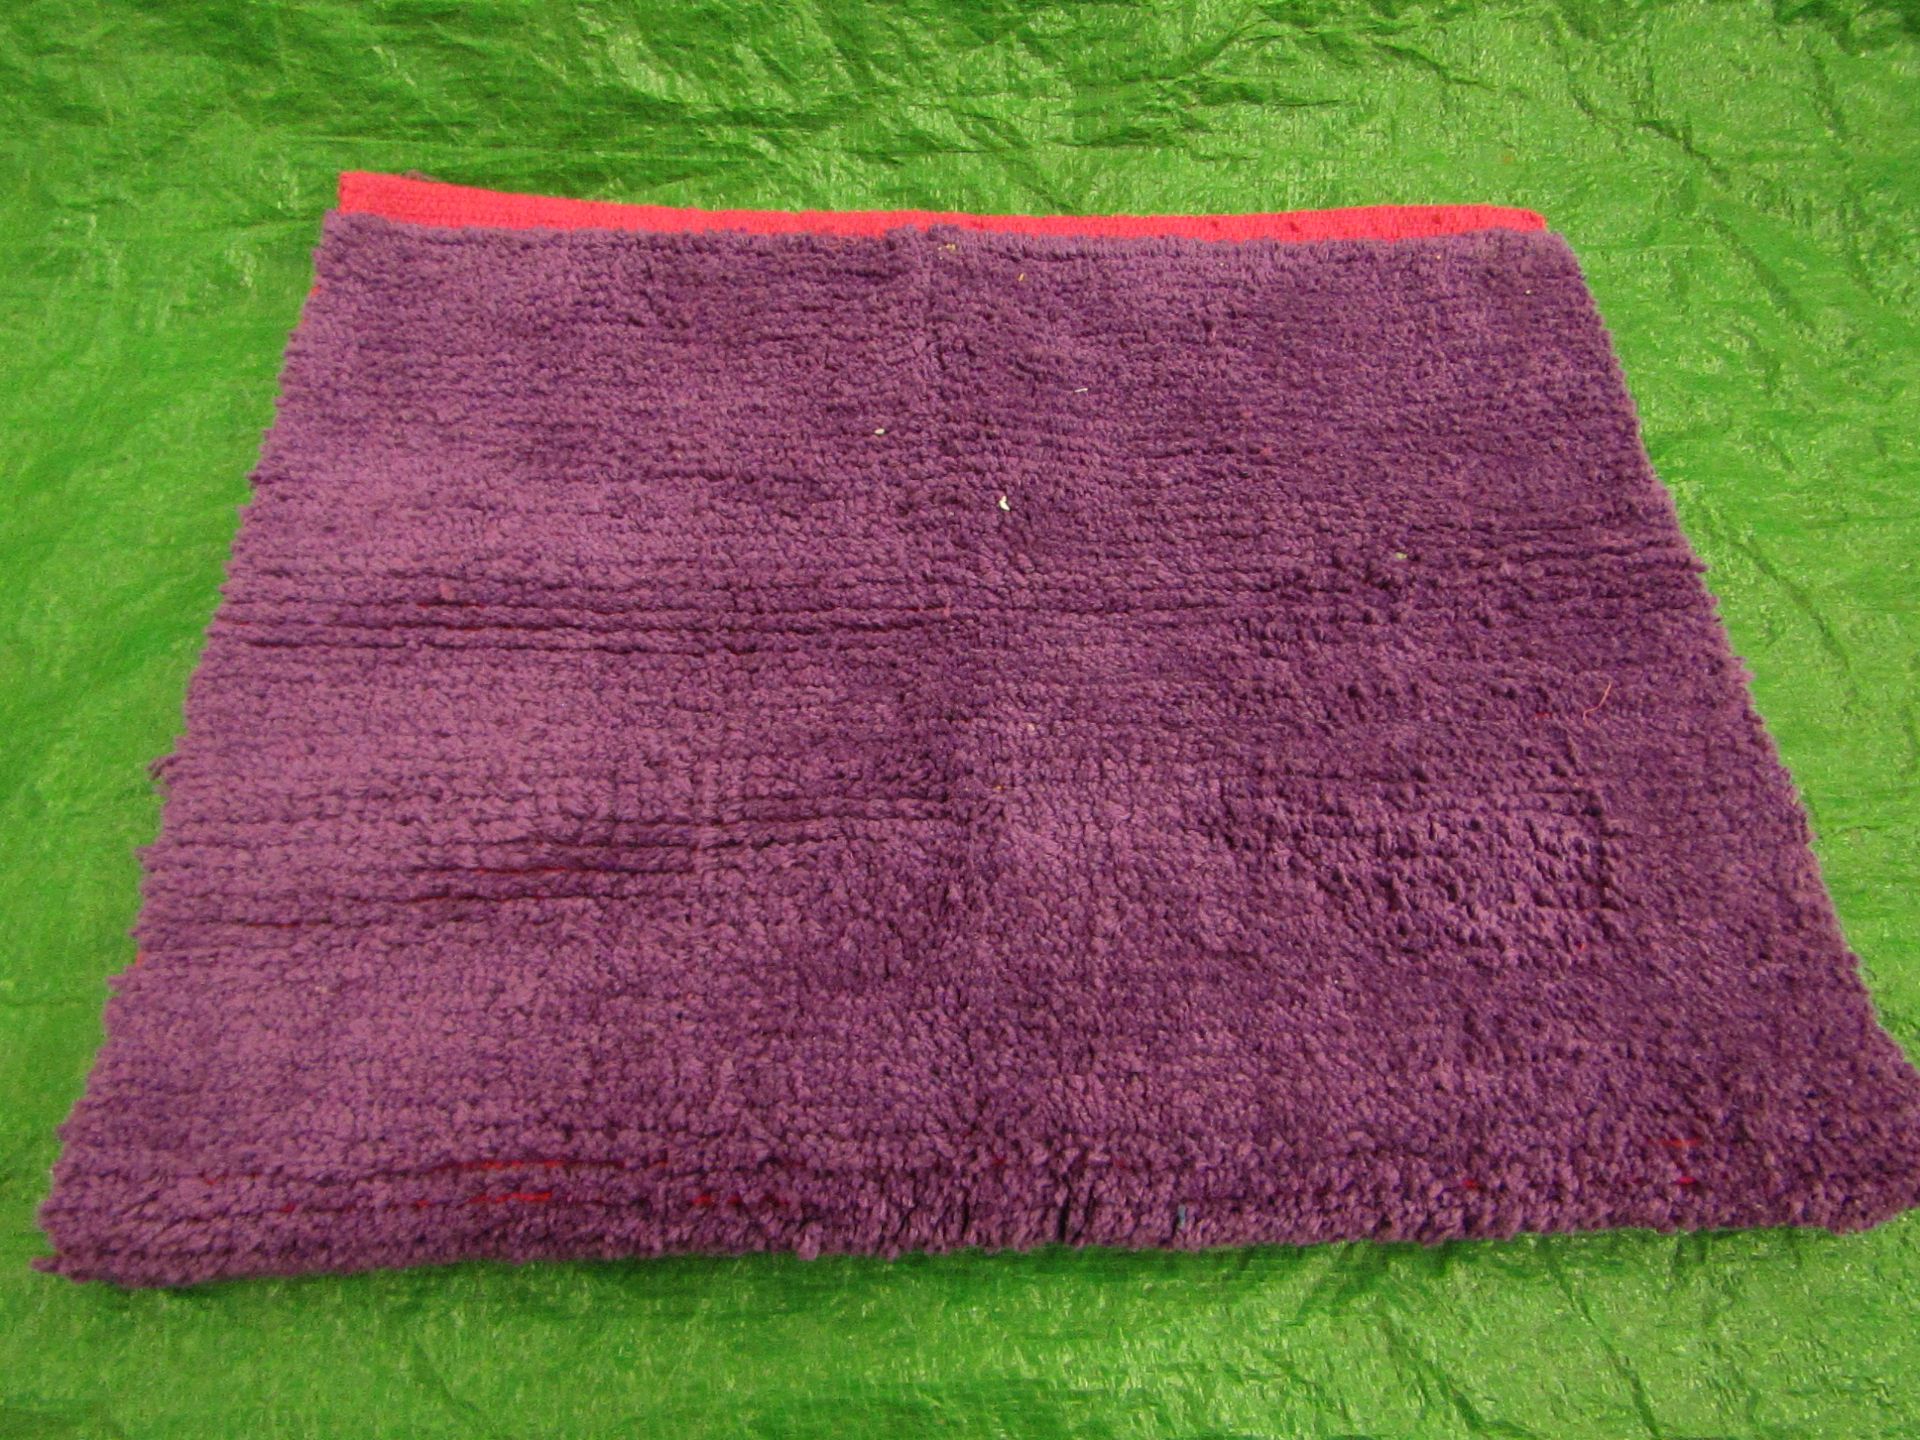 Unbranded - Bathroom Rug ( Purple & Pink ) - 80x50cm - Unused & Packaged.